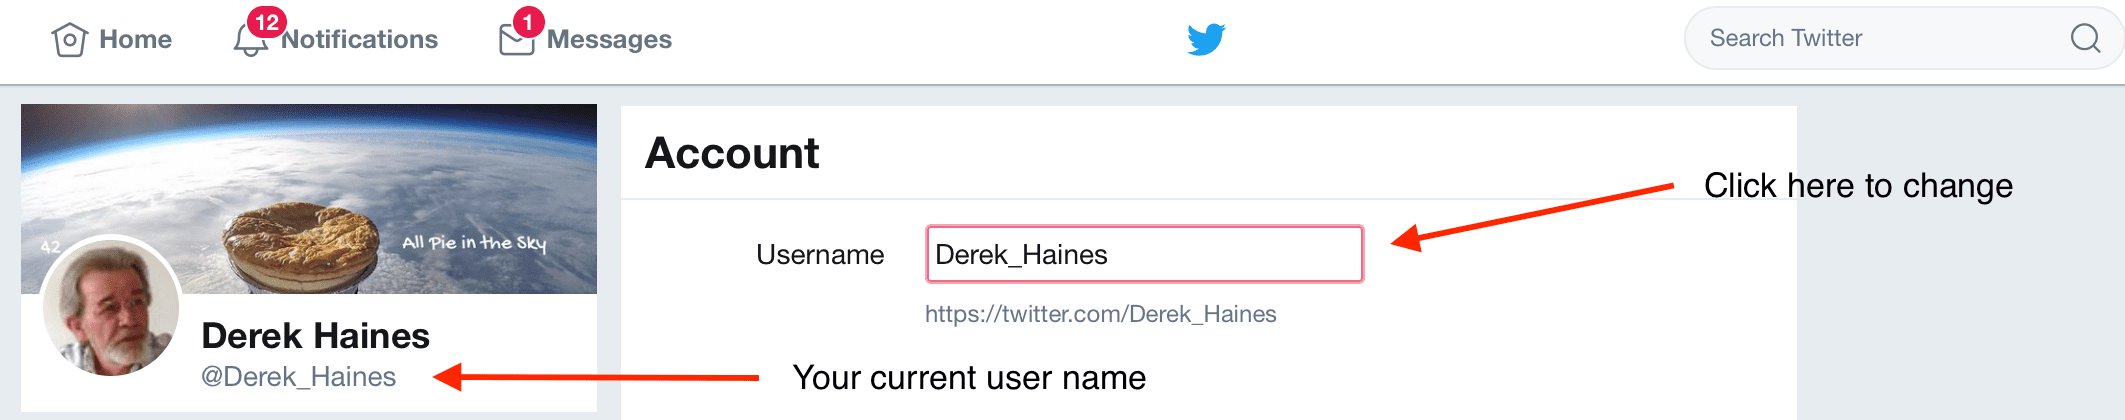 Change user name